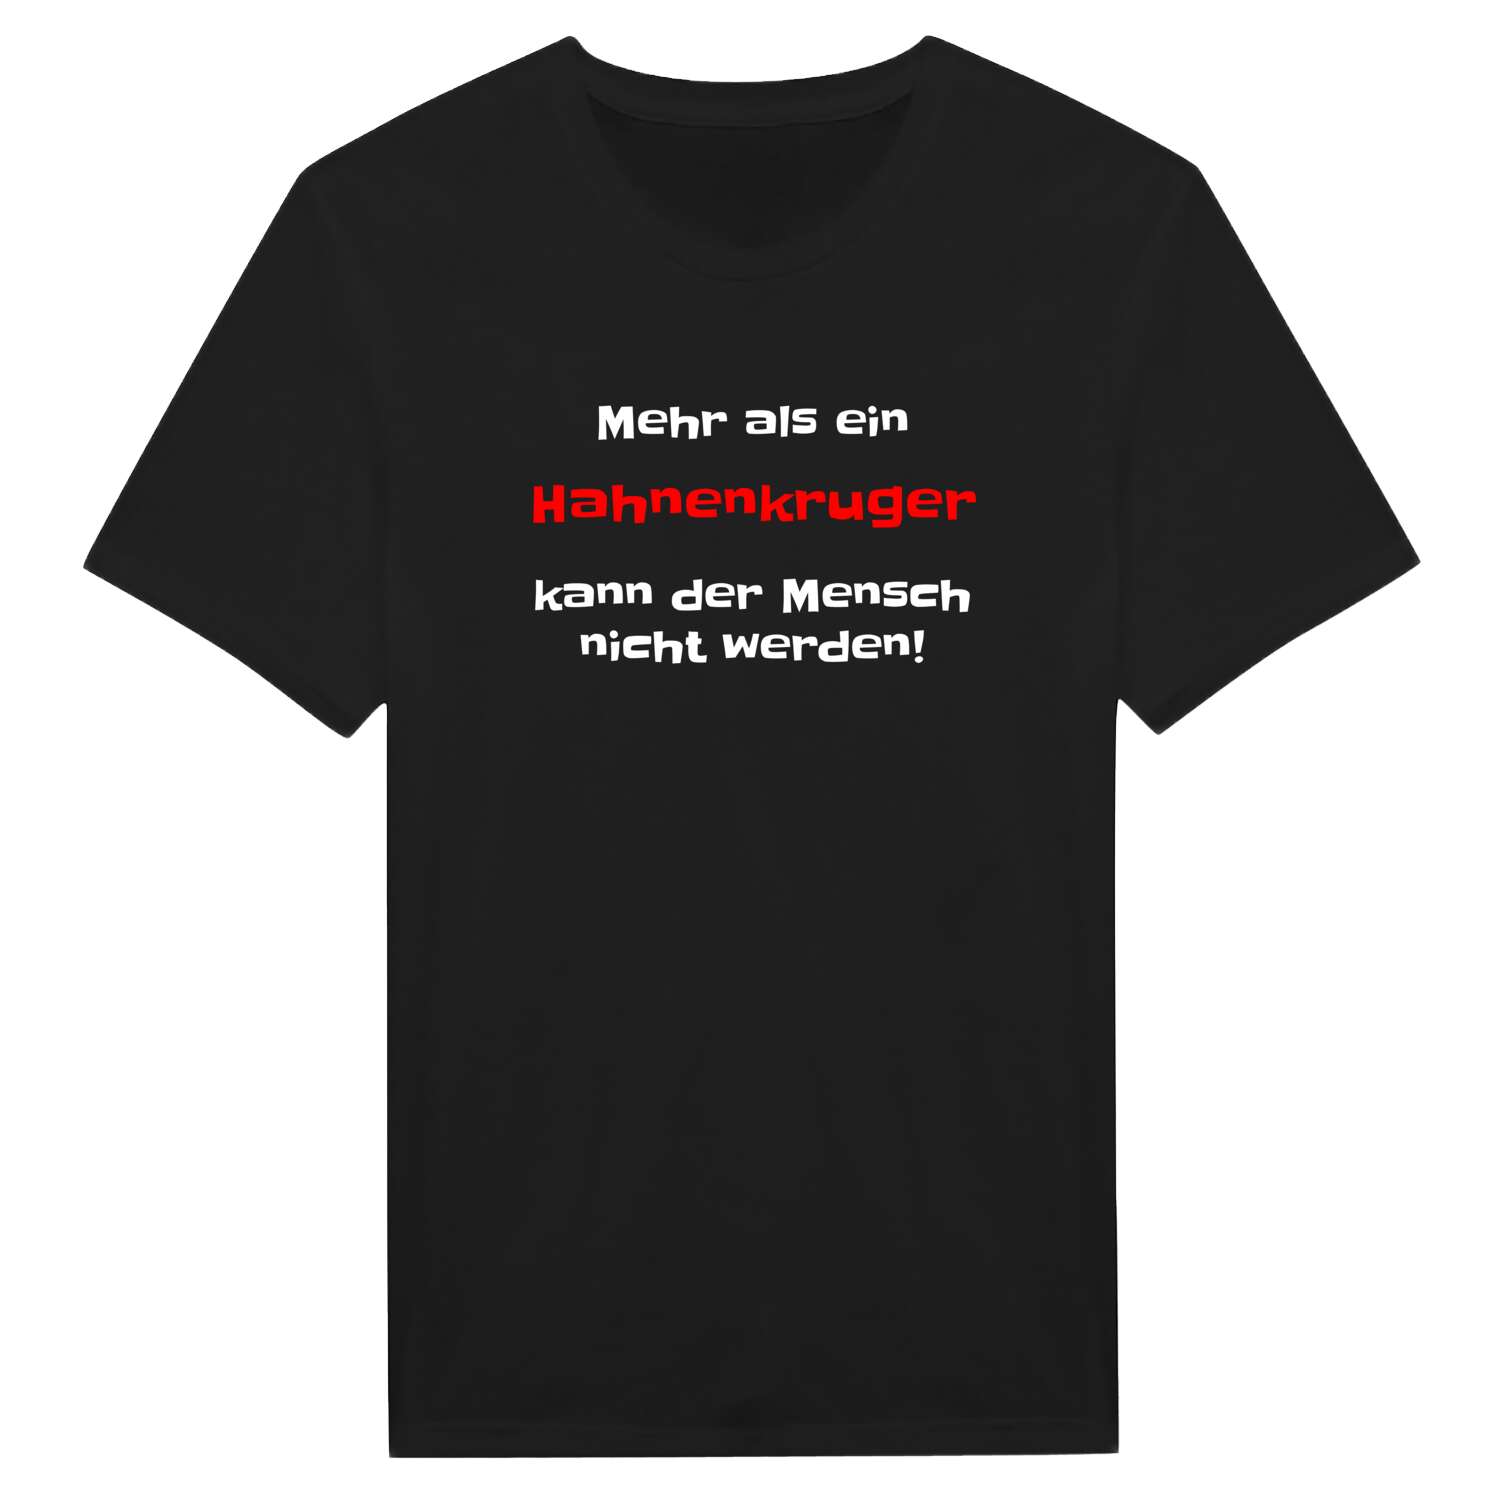 Hahnenkrug T-Shirt »Mehr als ein«